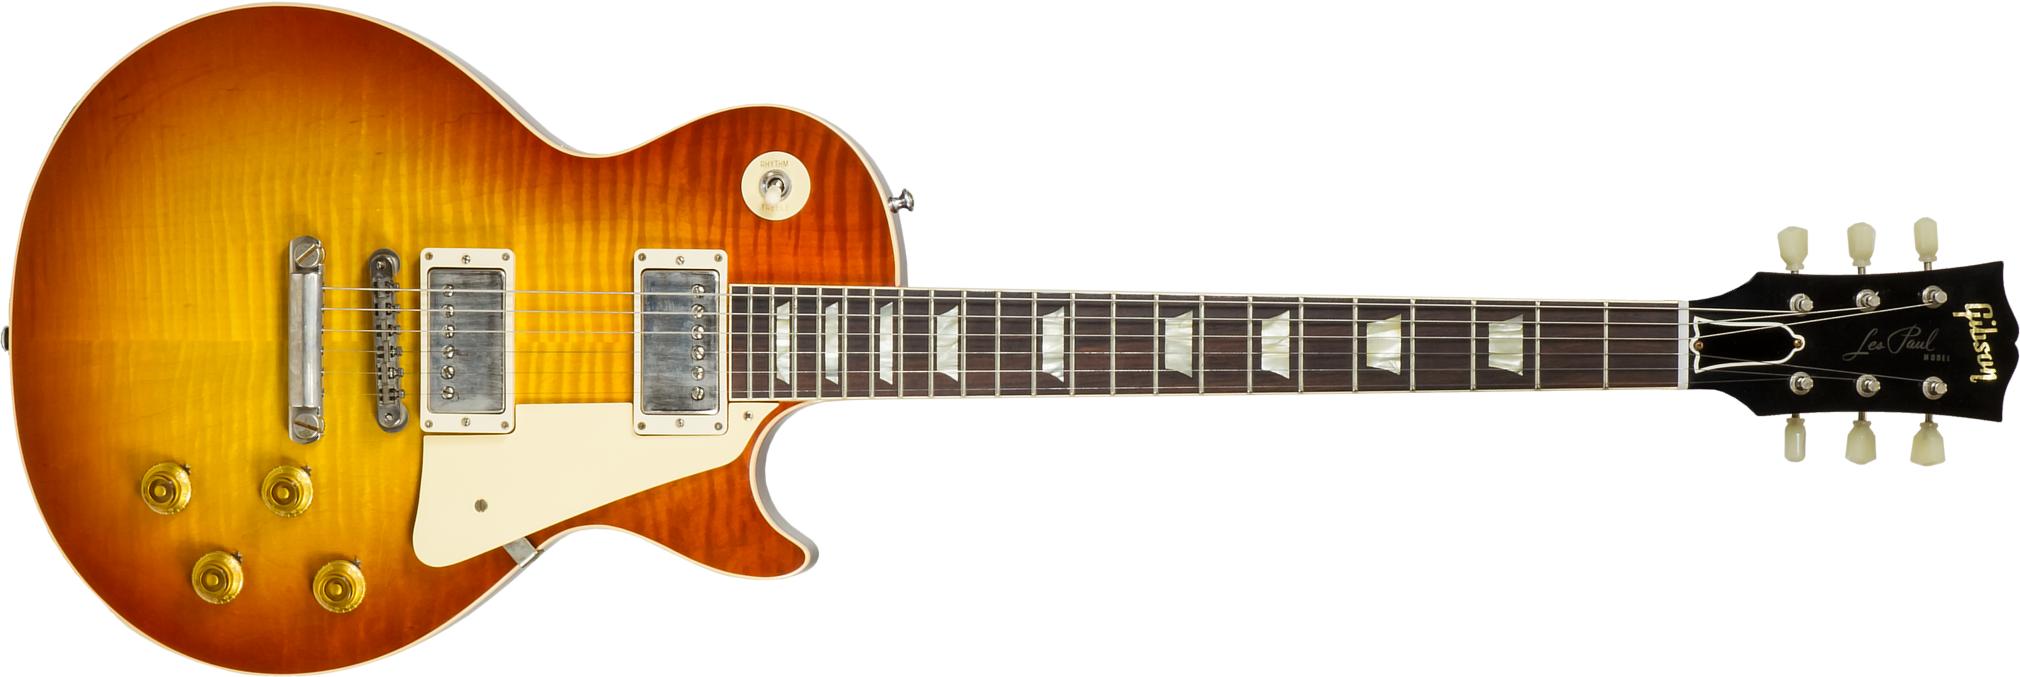 Gibson Custom Shop Les Paul Standard 1960 V1 60th Anniversary #001496 - Vos Antiquity Burst - Guitare Électrique Single Cut - Main picture